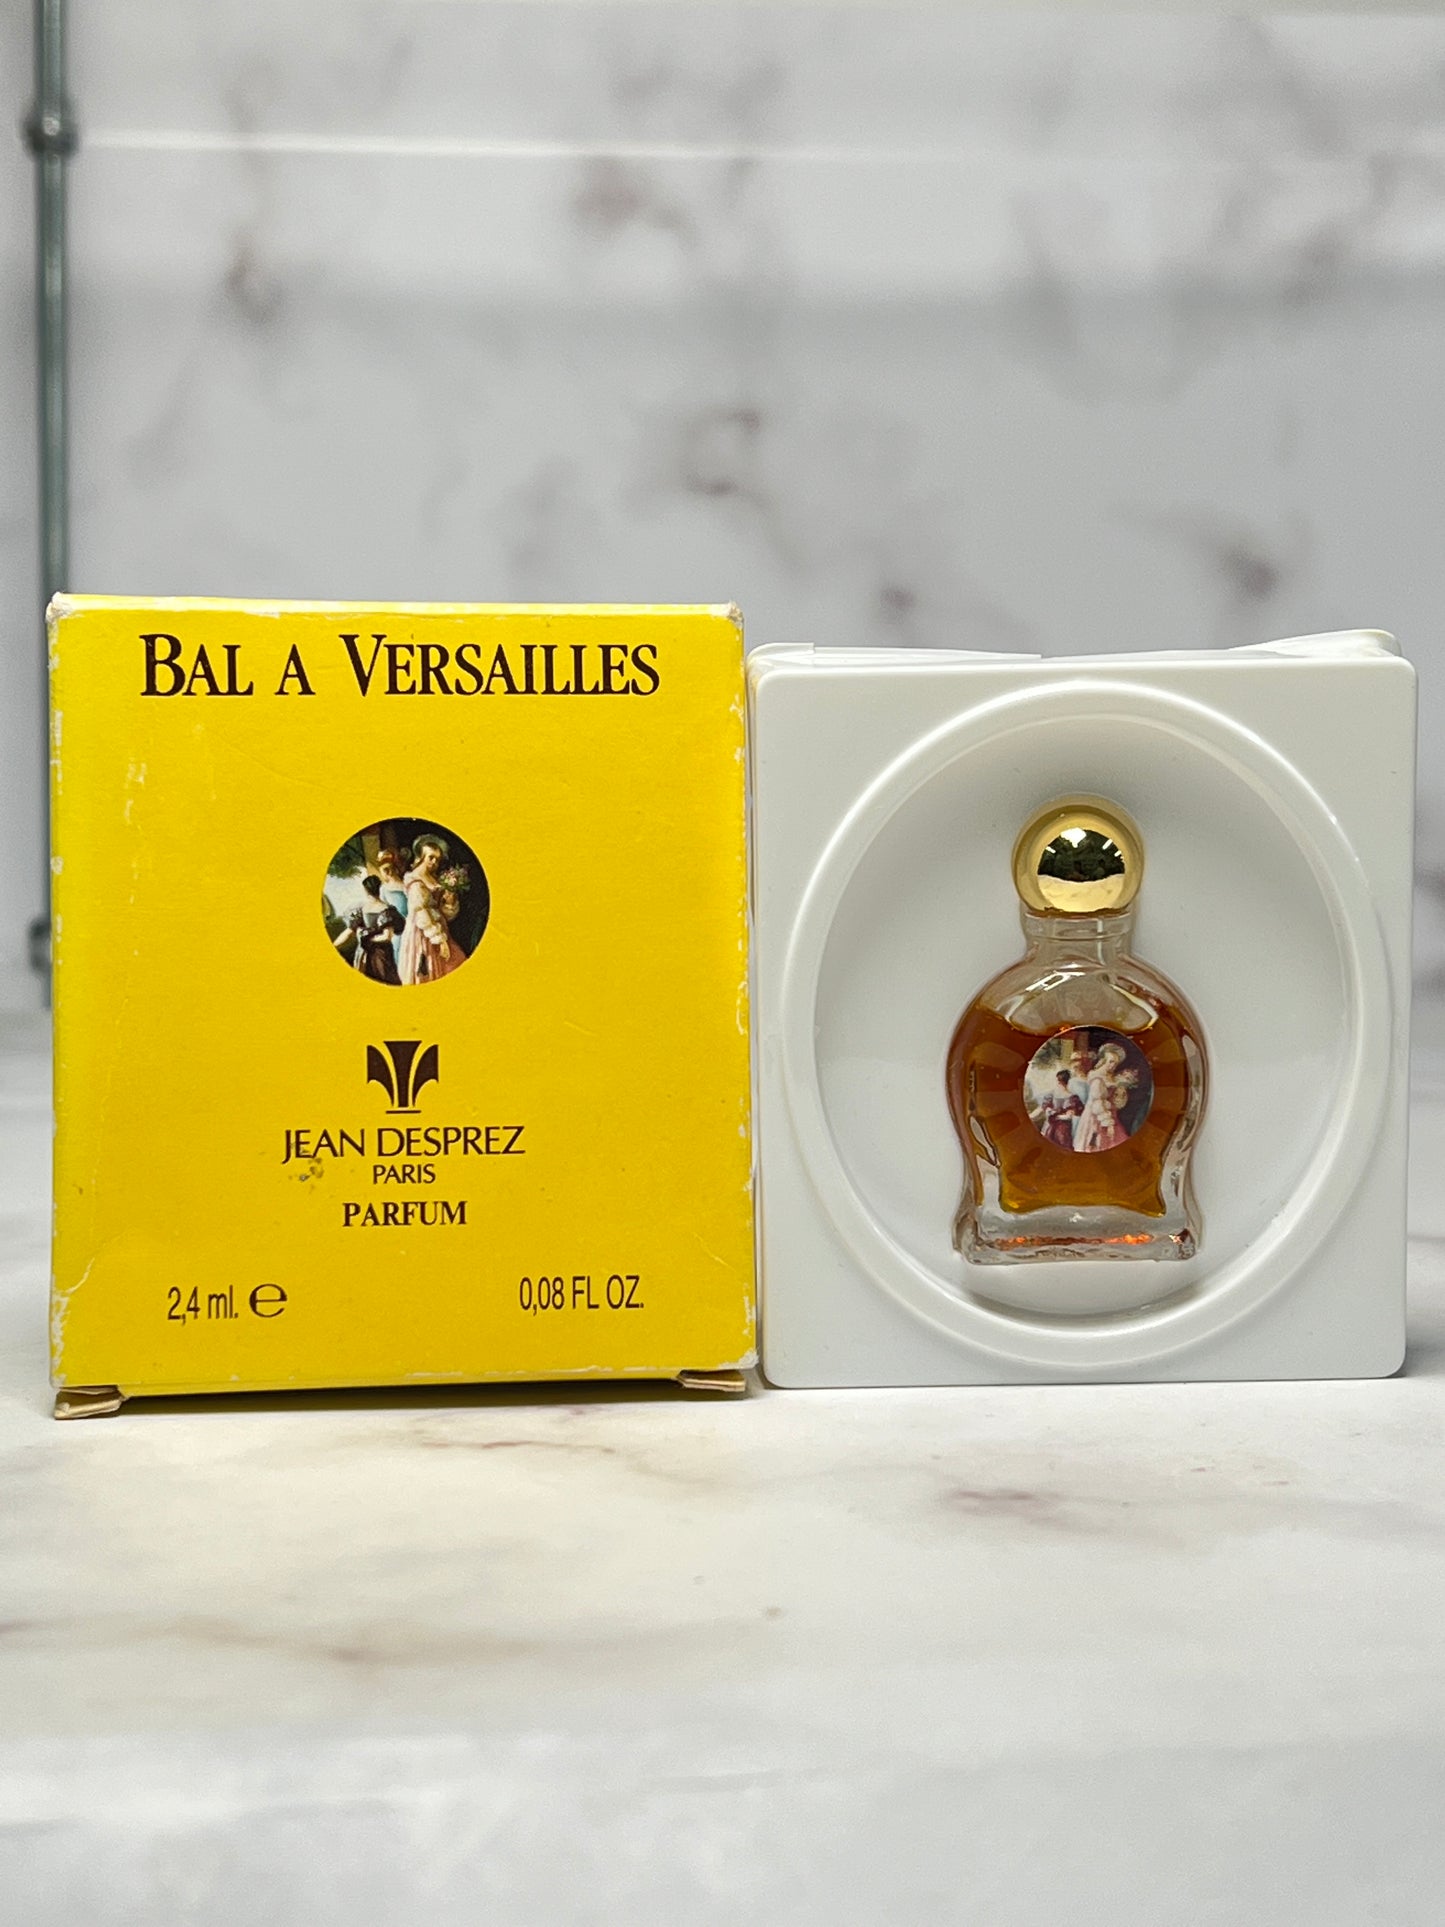 Rare Bal a versailles 2.4ml 0.08 oz parfum Perfume  - 180723-21